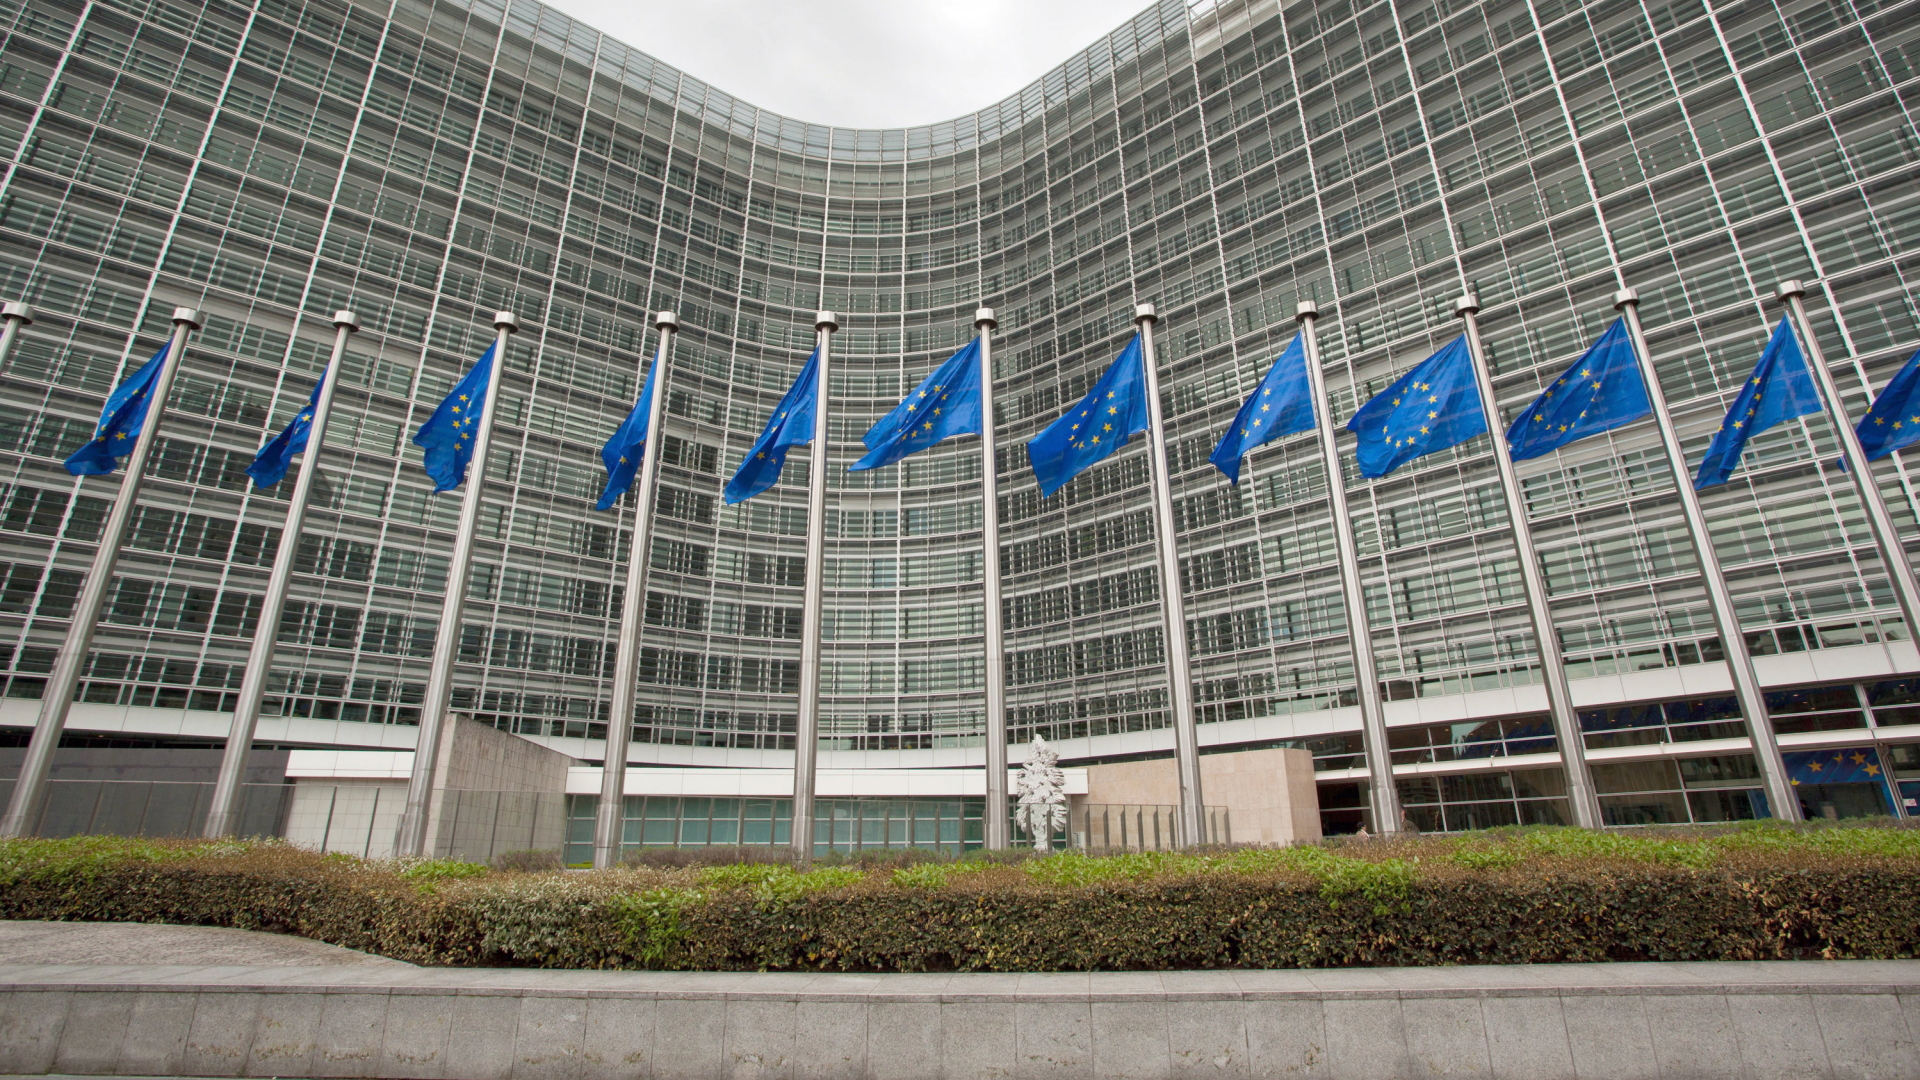  EU-Flaggen wehen vor dem Gebäude der Europäischen Kommission in Brüssel. | dpa